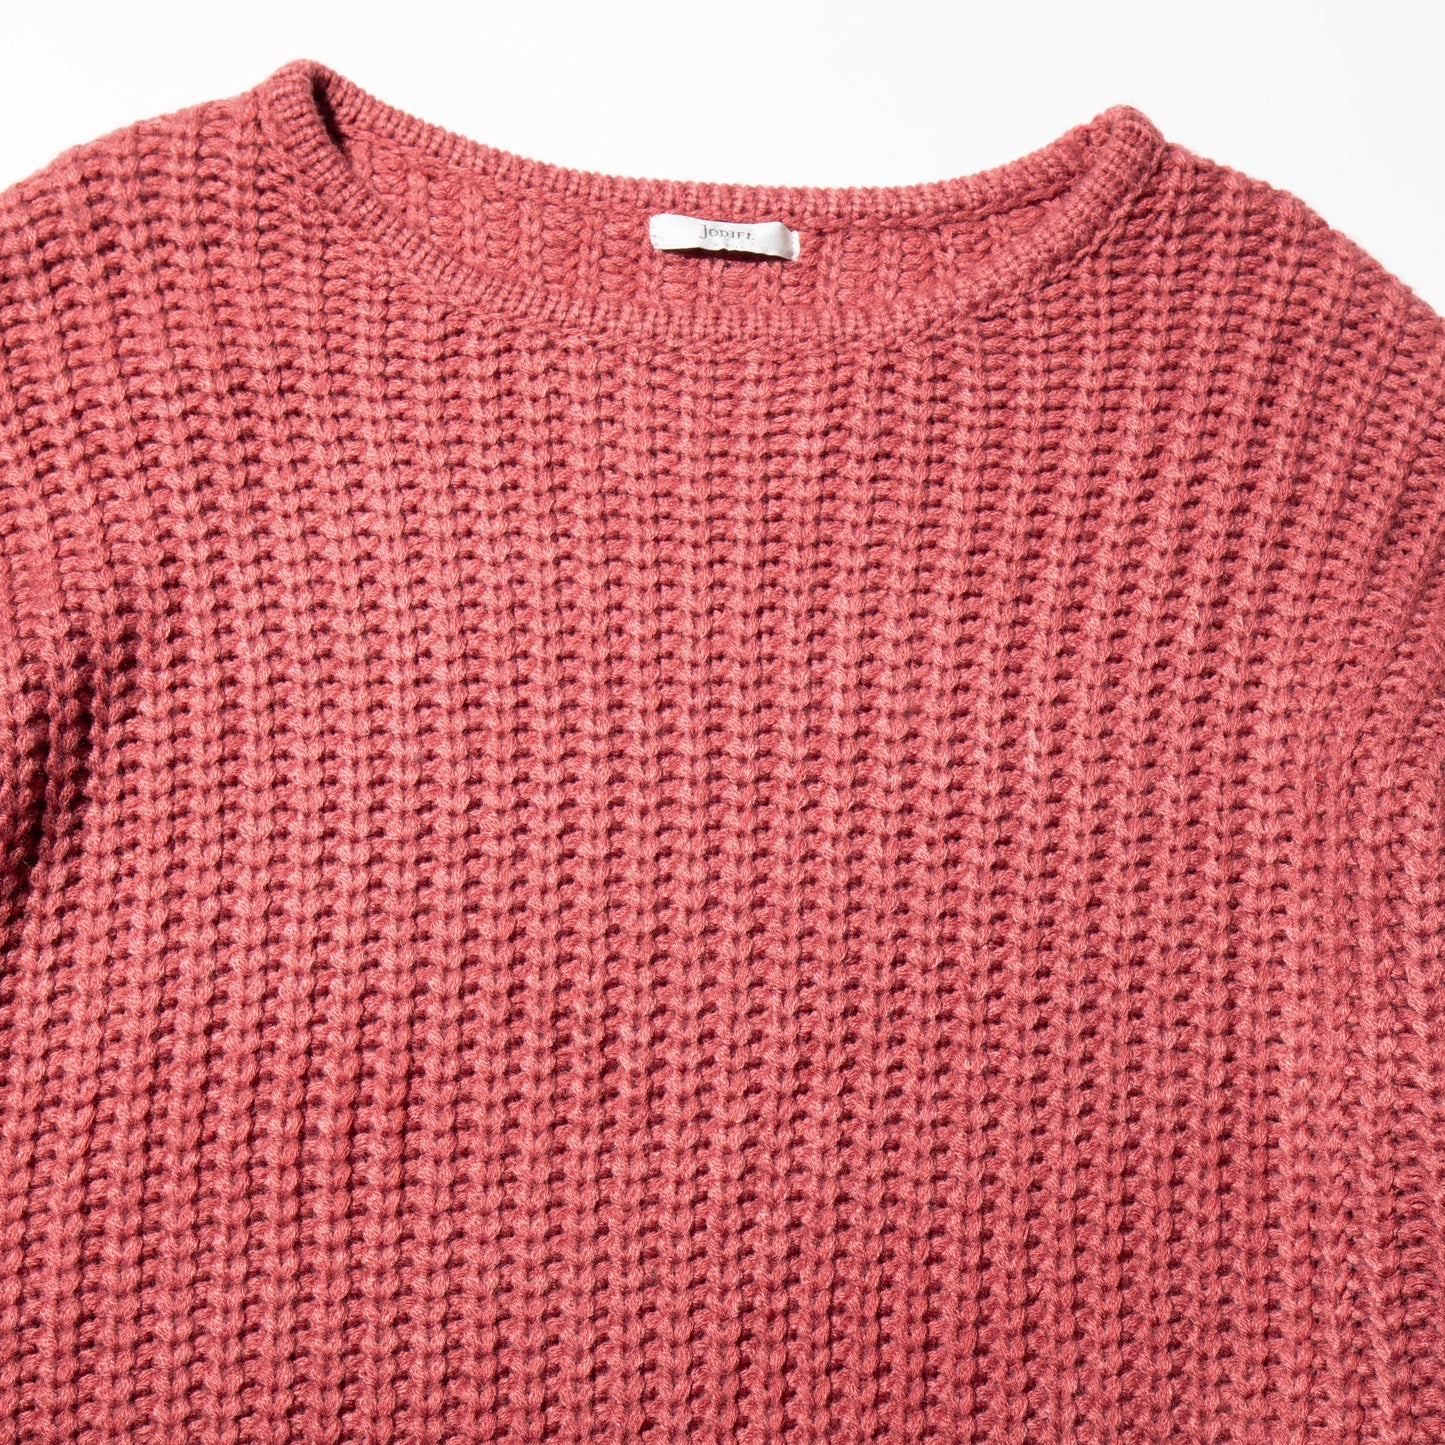 vintage fringe sleeve loose sweater